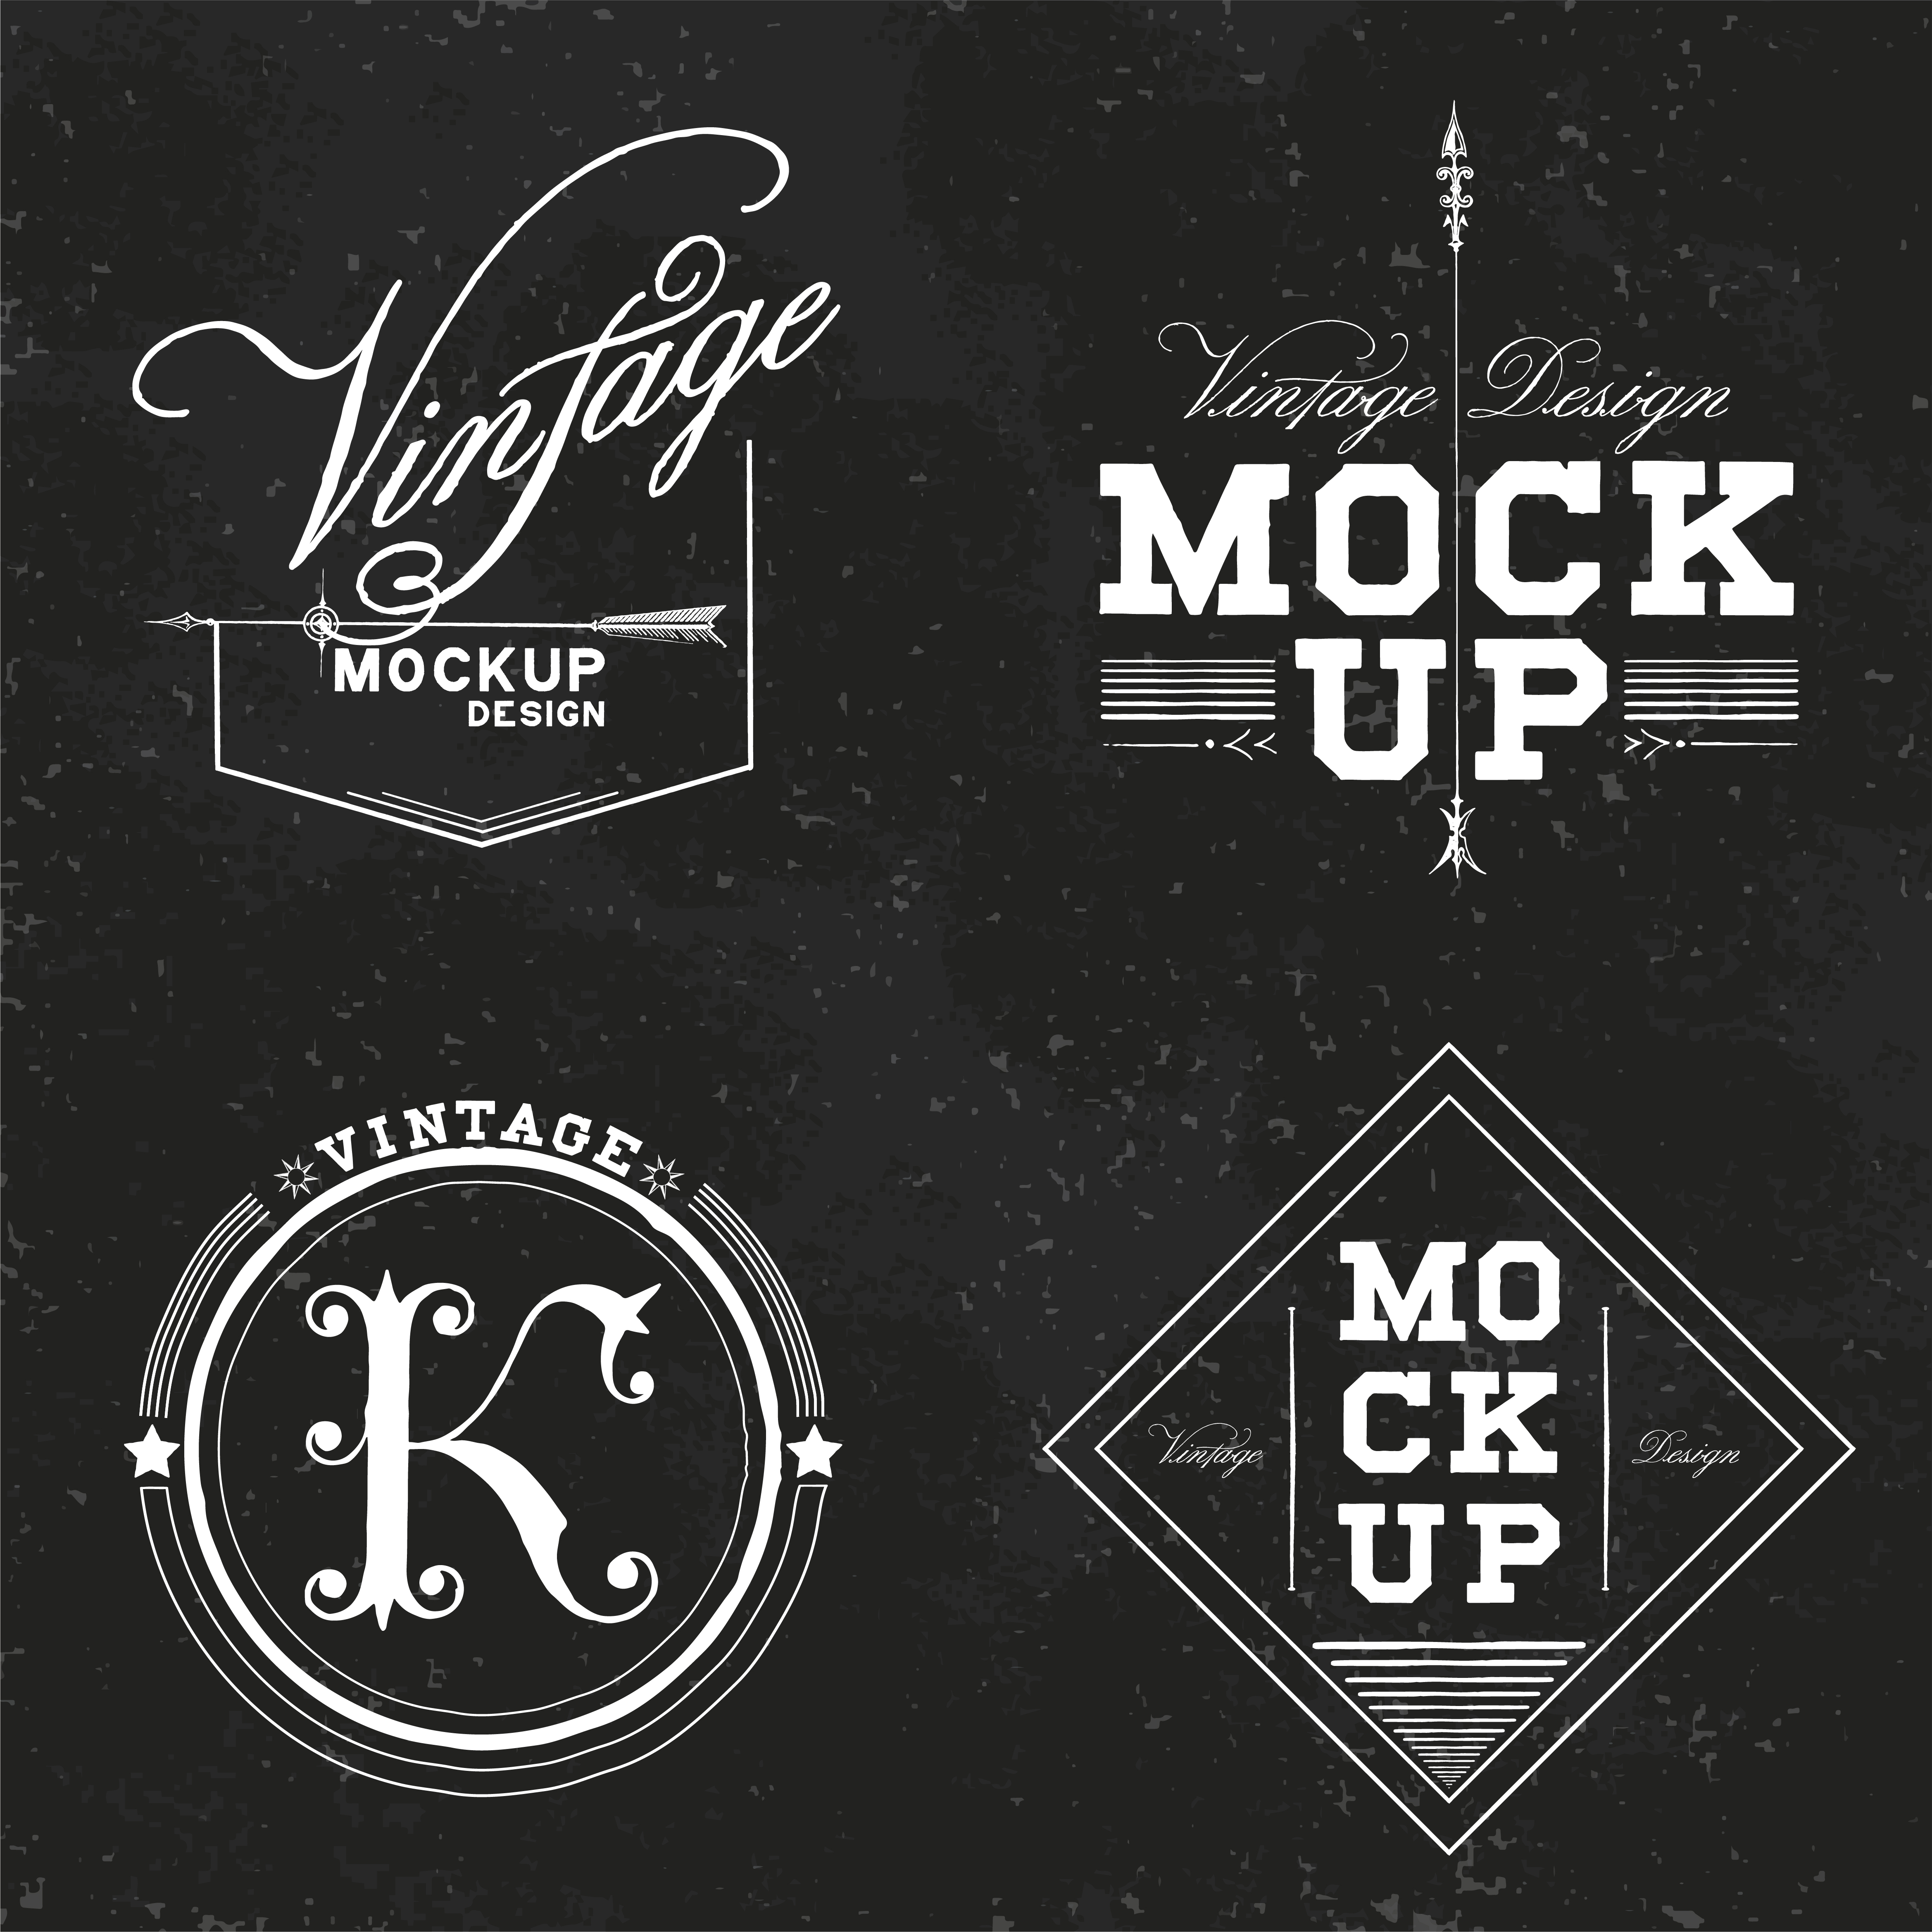 Download Set of vintage mockup logo design vector - Download Free ...